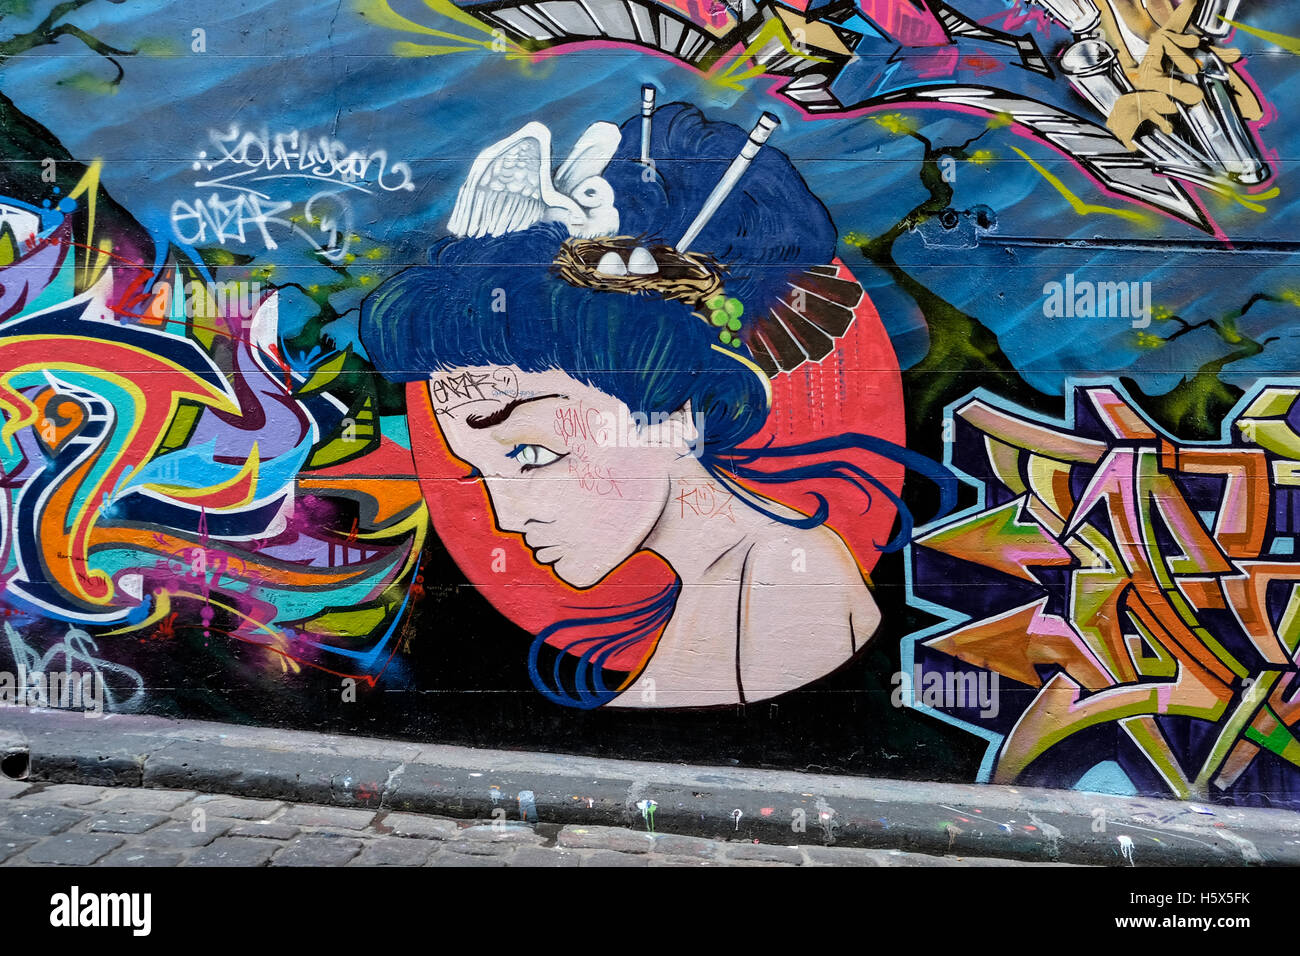 Street art mural in Hosier Lane, Melbourne, Australia Stock Photo